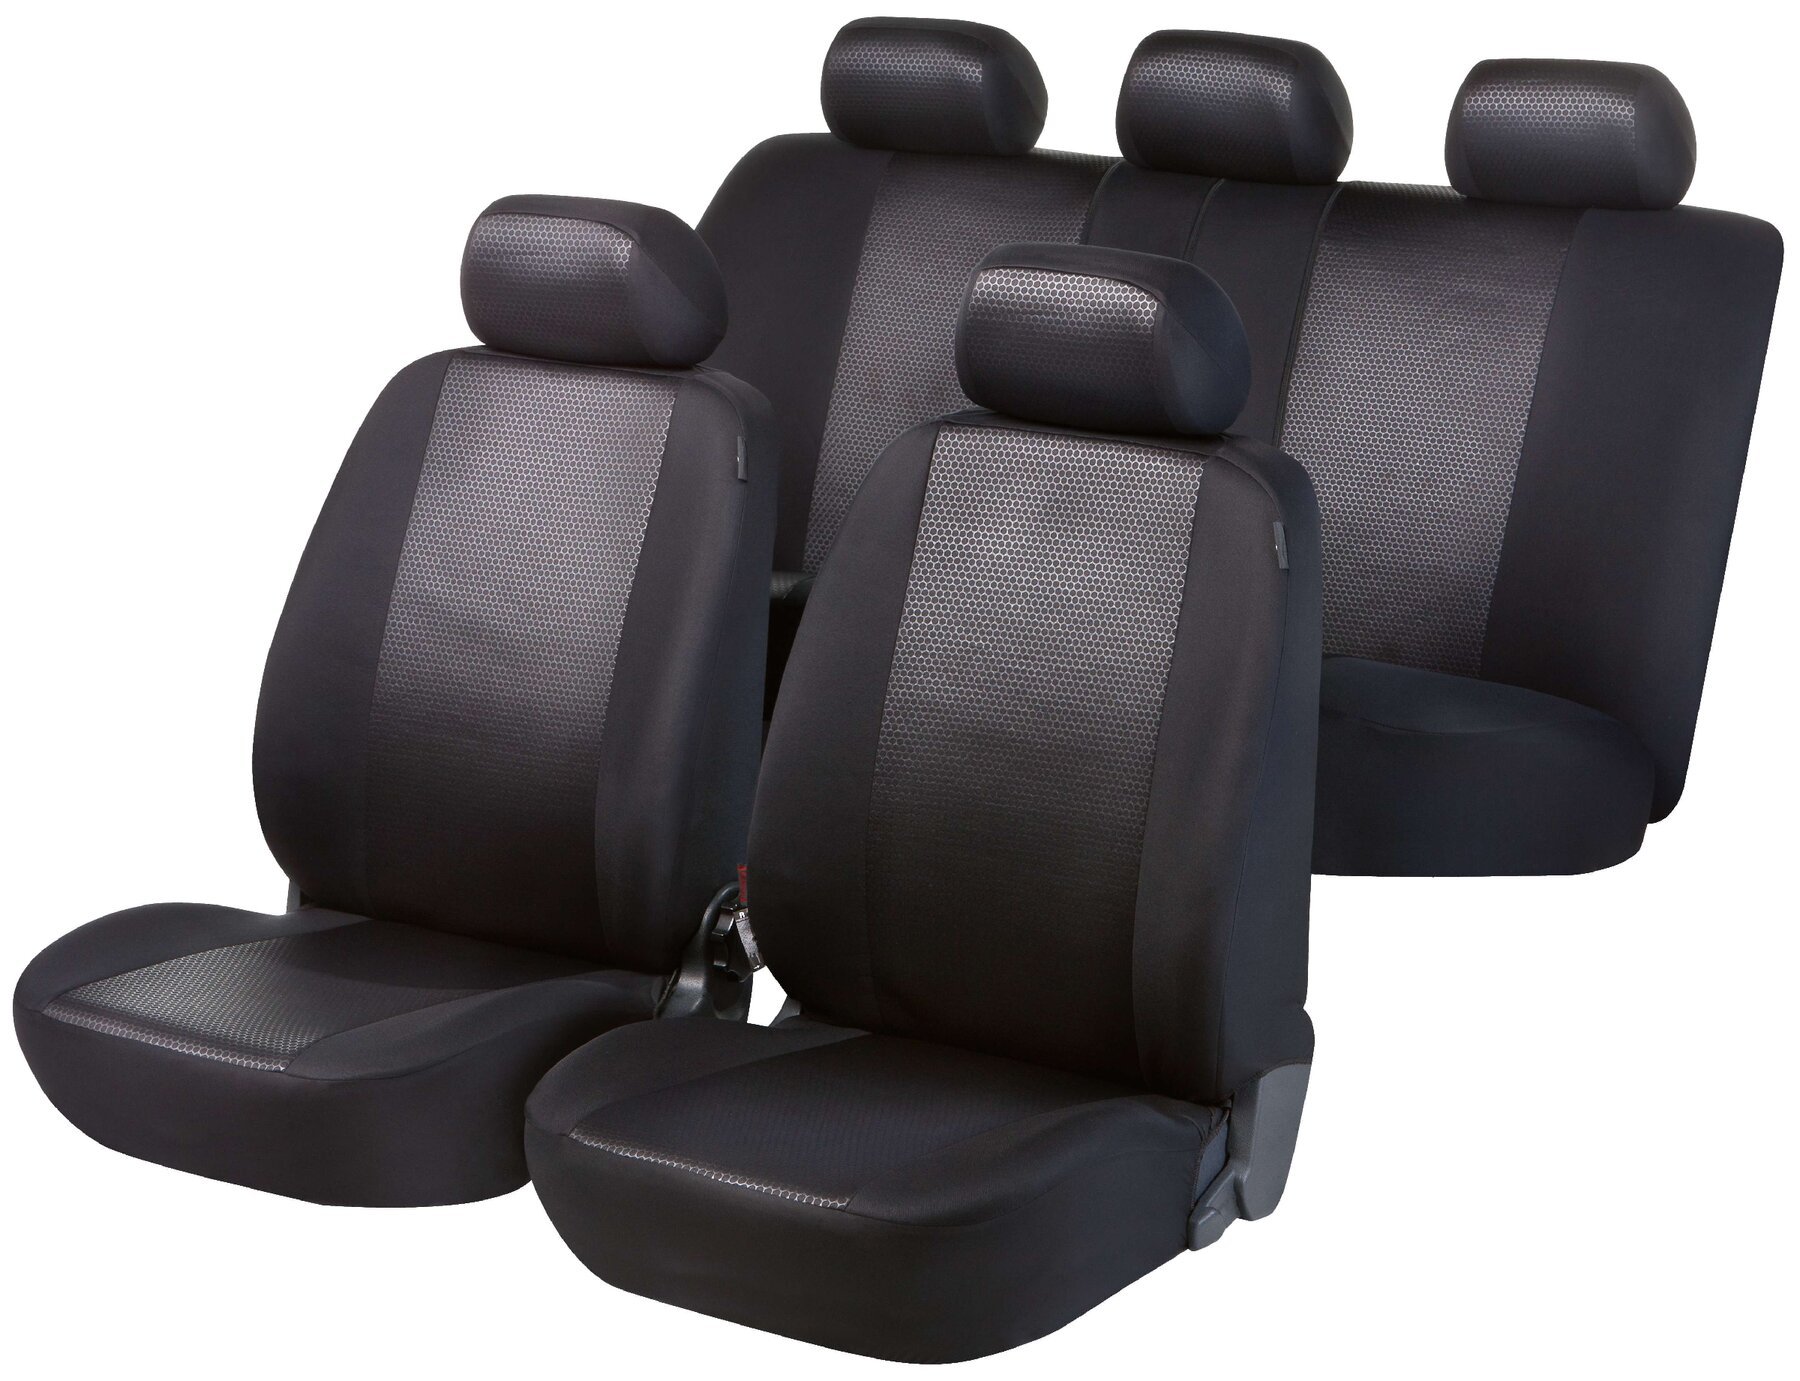 Housses de sièges noir brillant ensemble complet pour les sièges avant et arrière